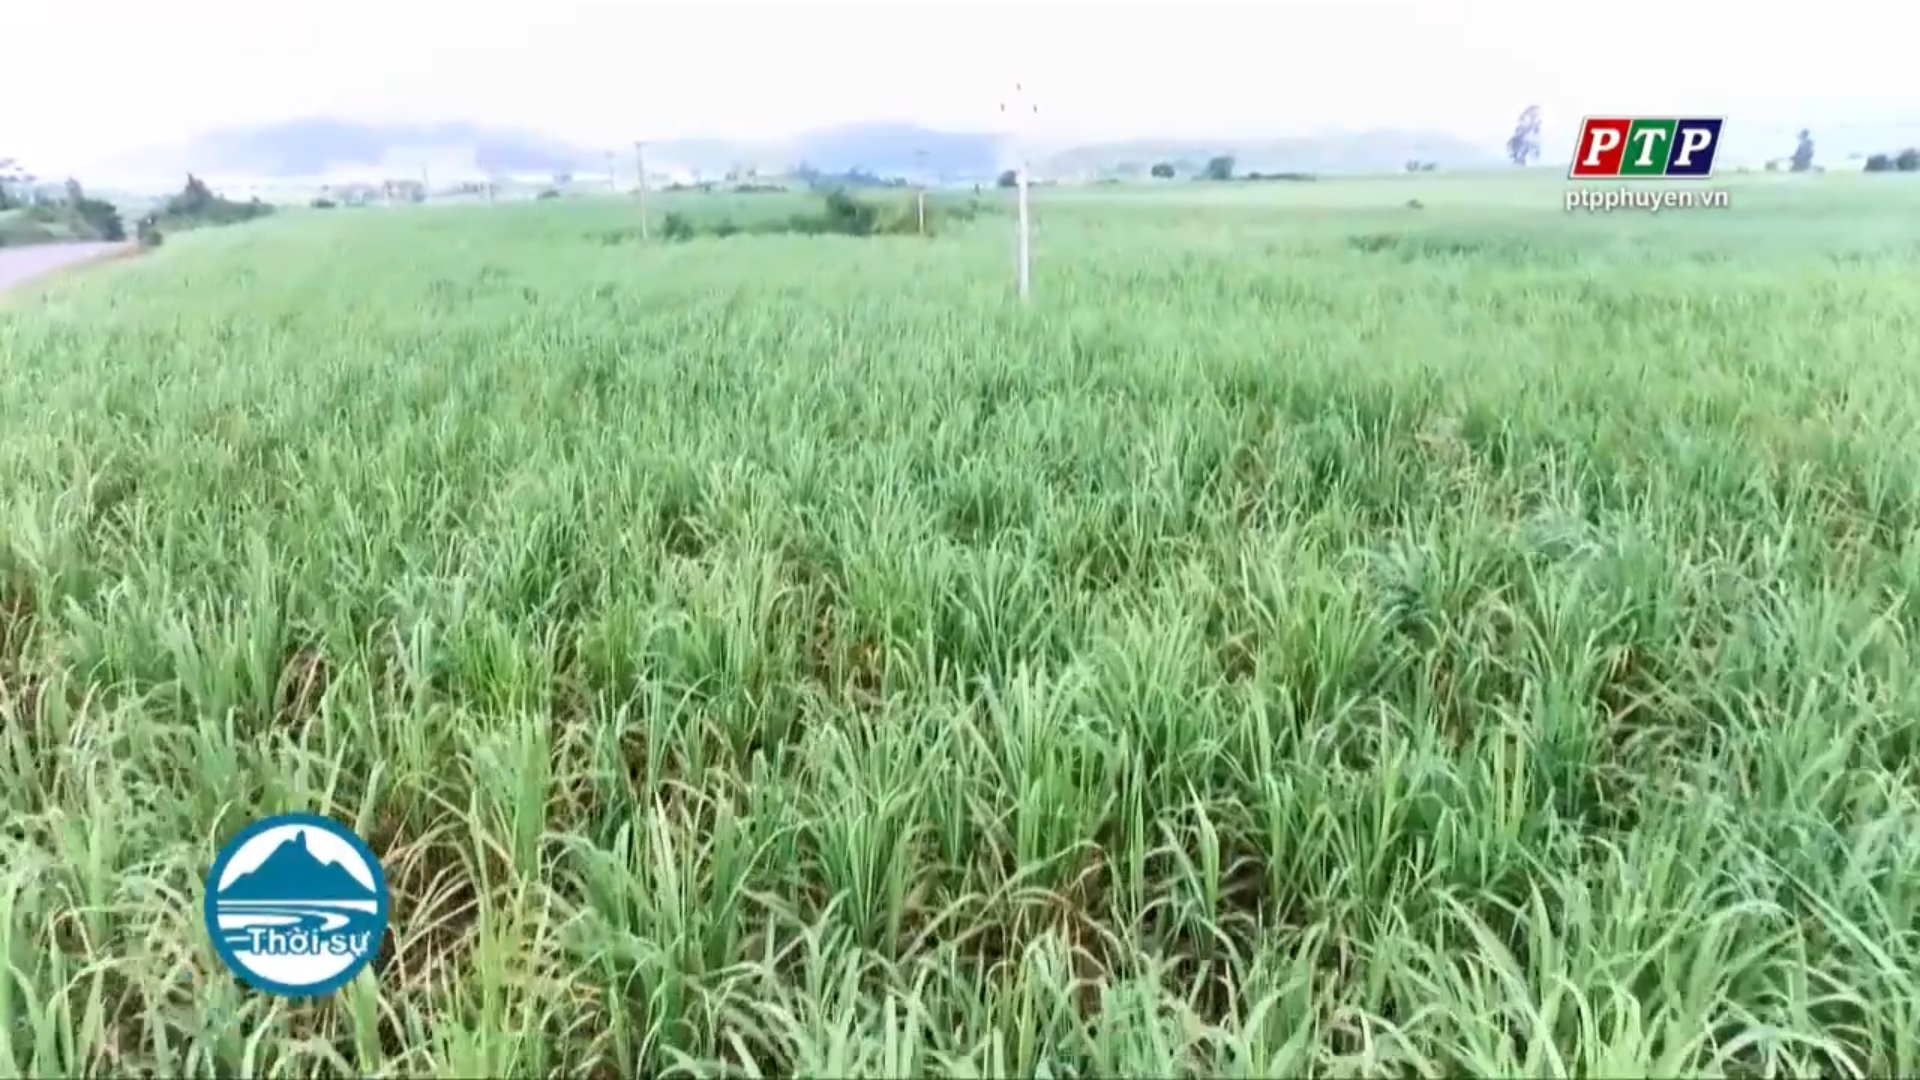 Kỳ vọng các giải pháp đưa nông nghiệp Phú Yên phát triển nhanh và bền vững